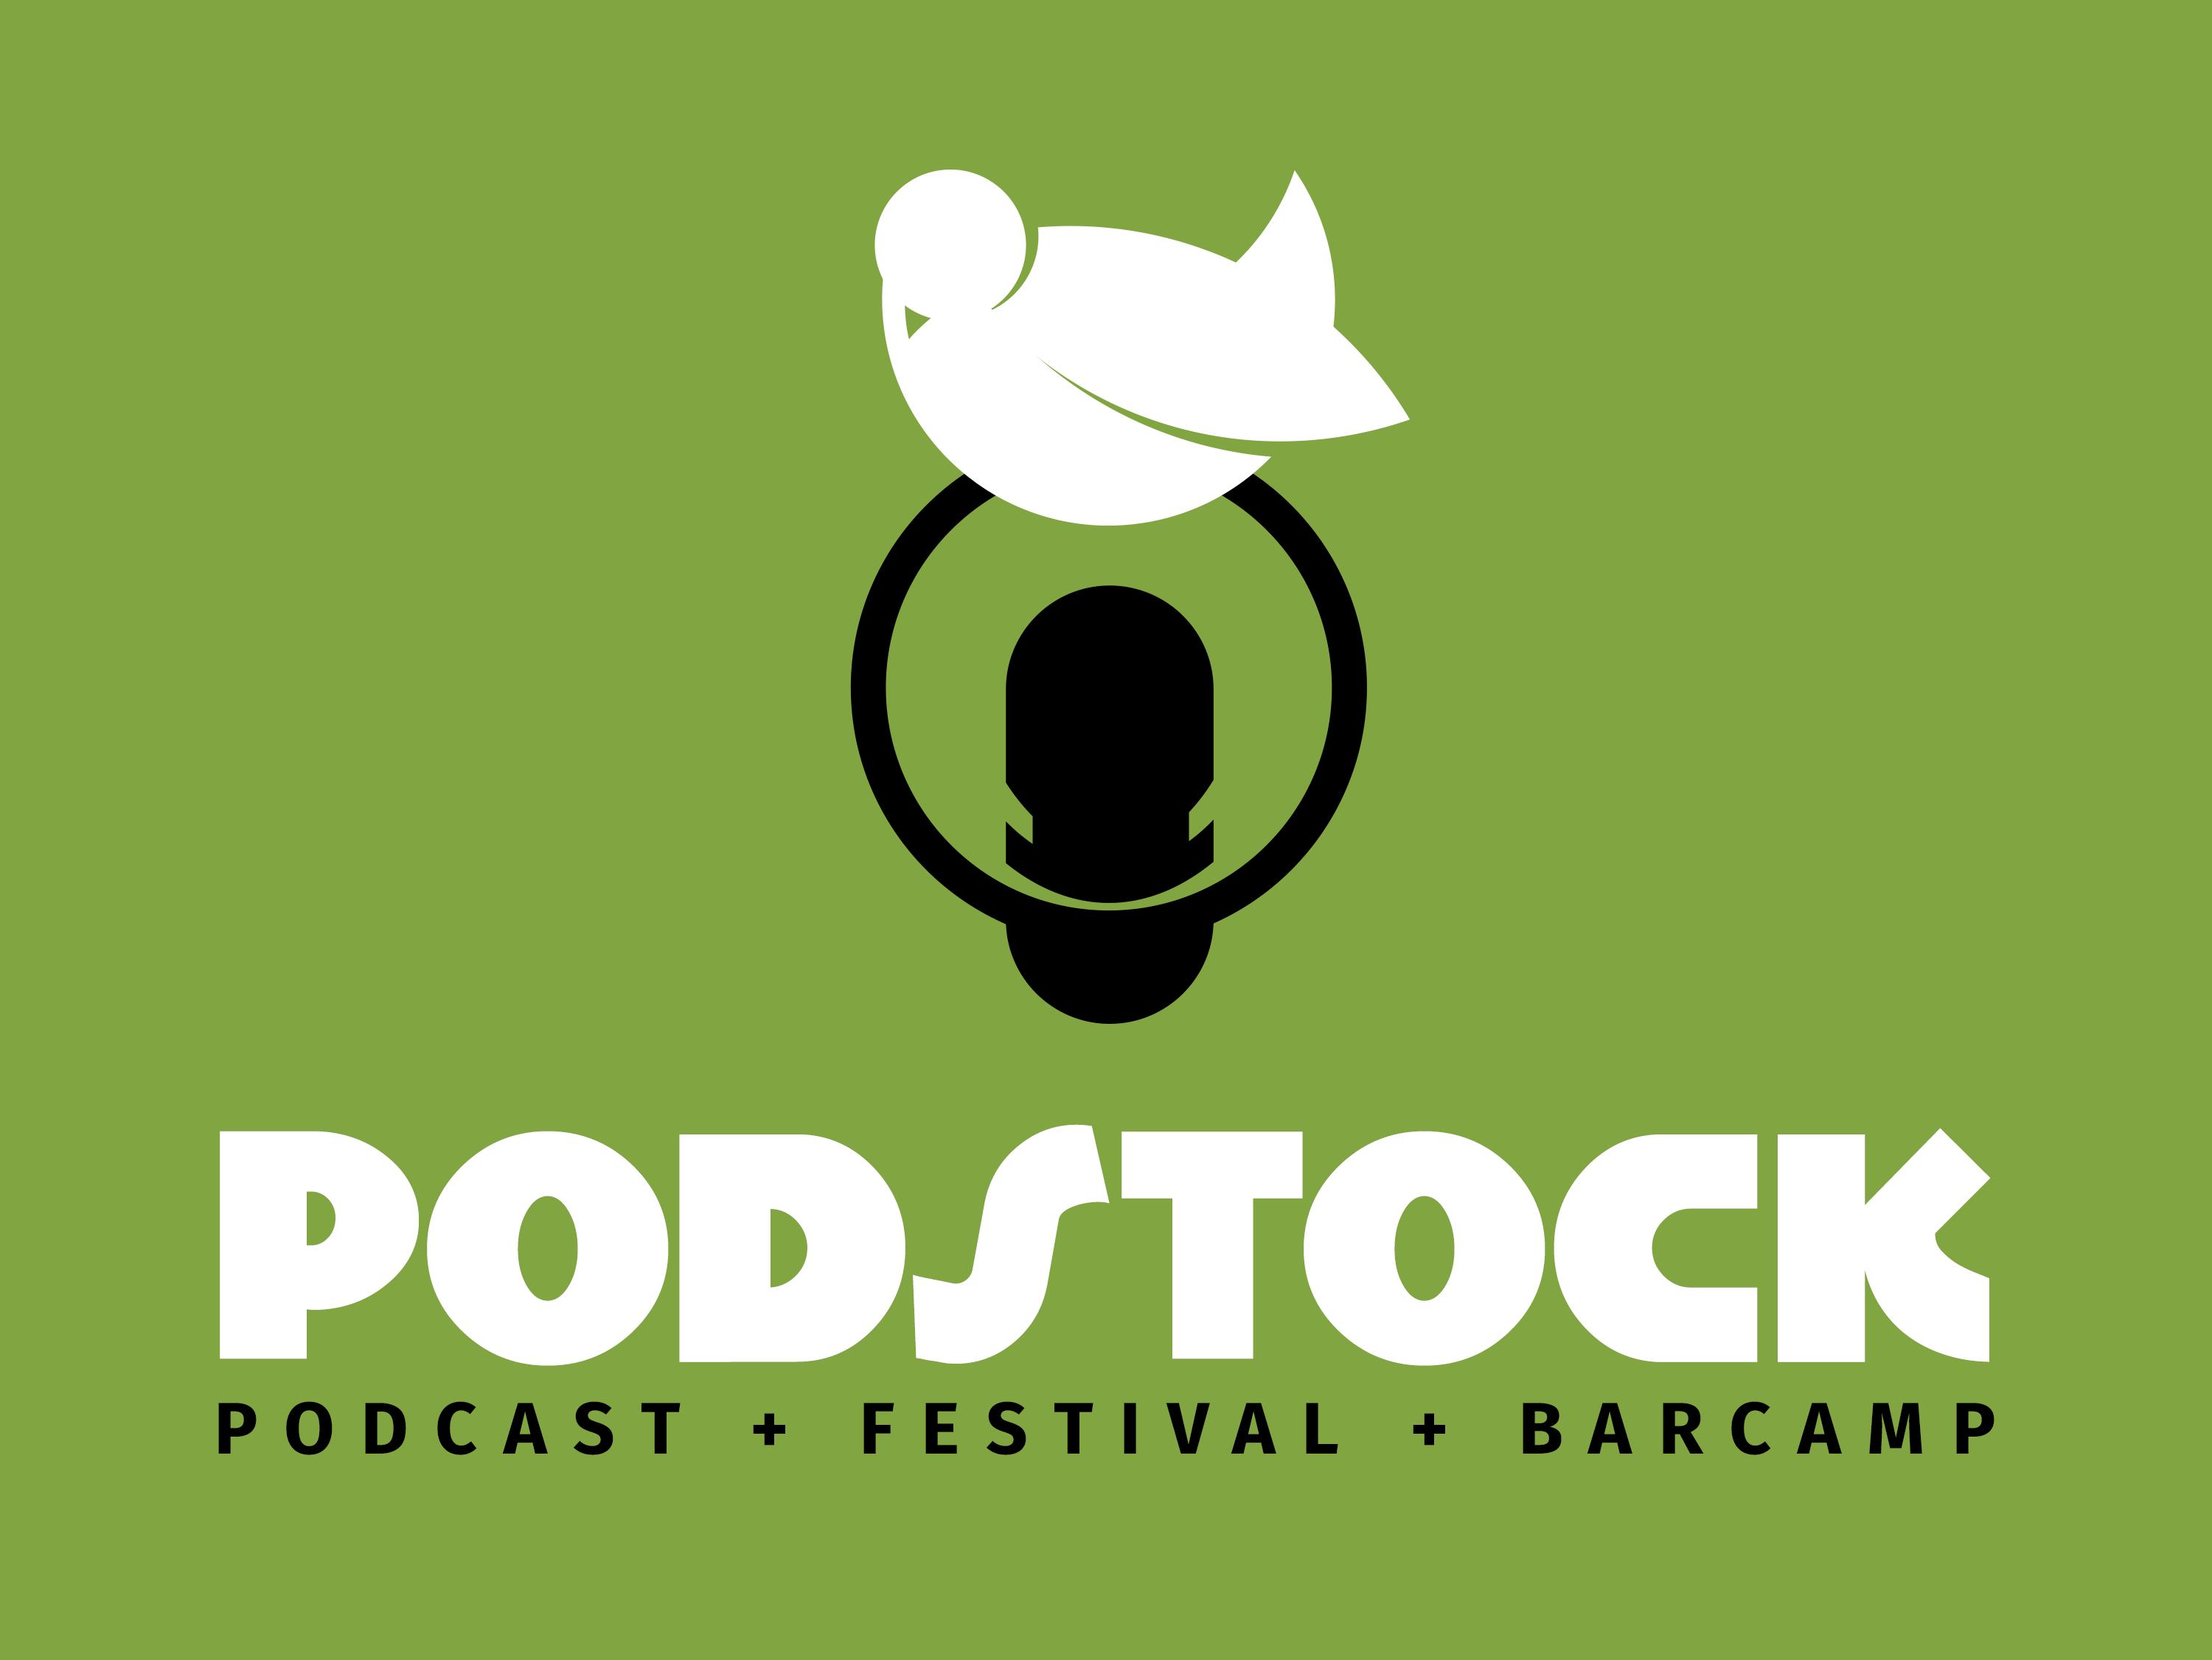 Podstock – Podcast